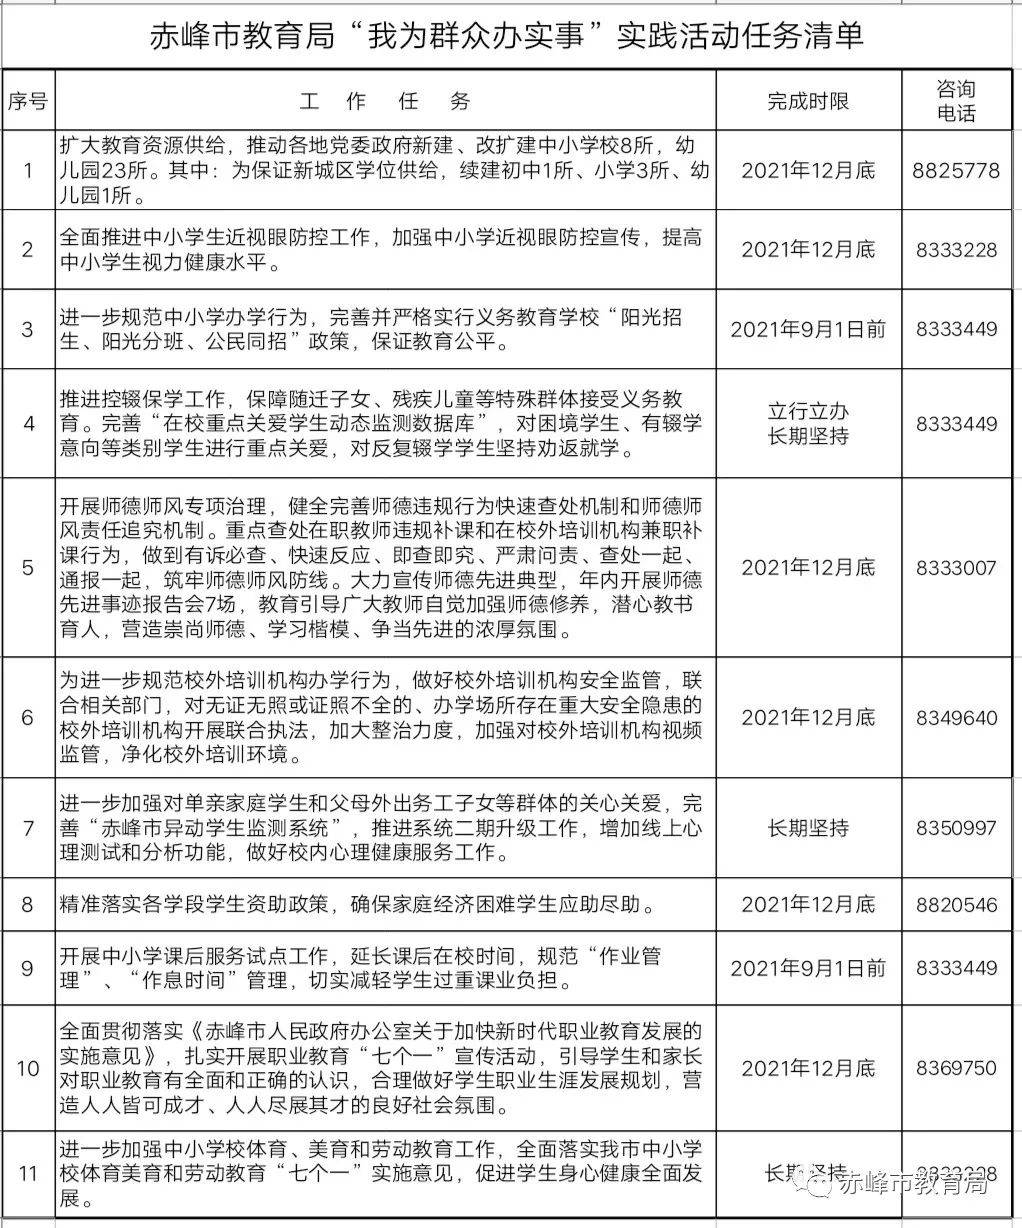 赤峰市教育局晒出为民办实事任务 清单,接受社会各界监督